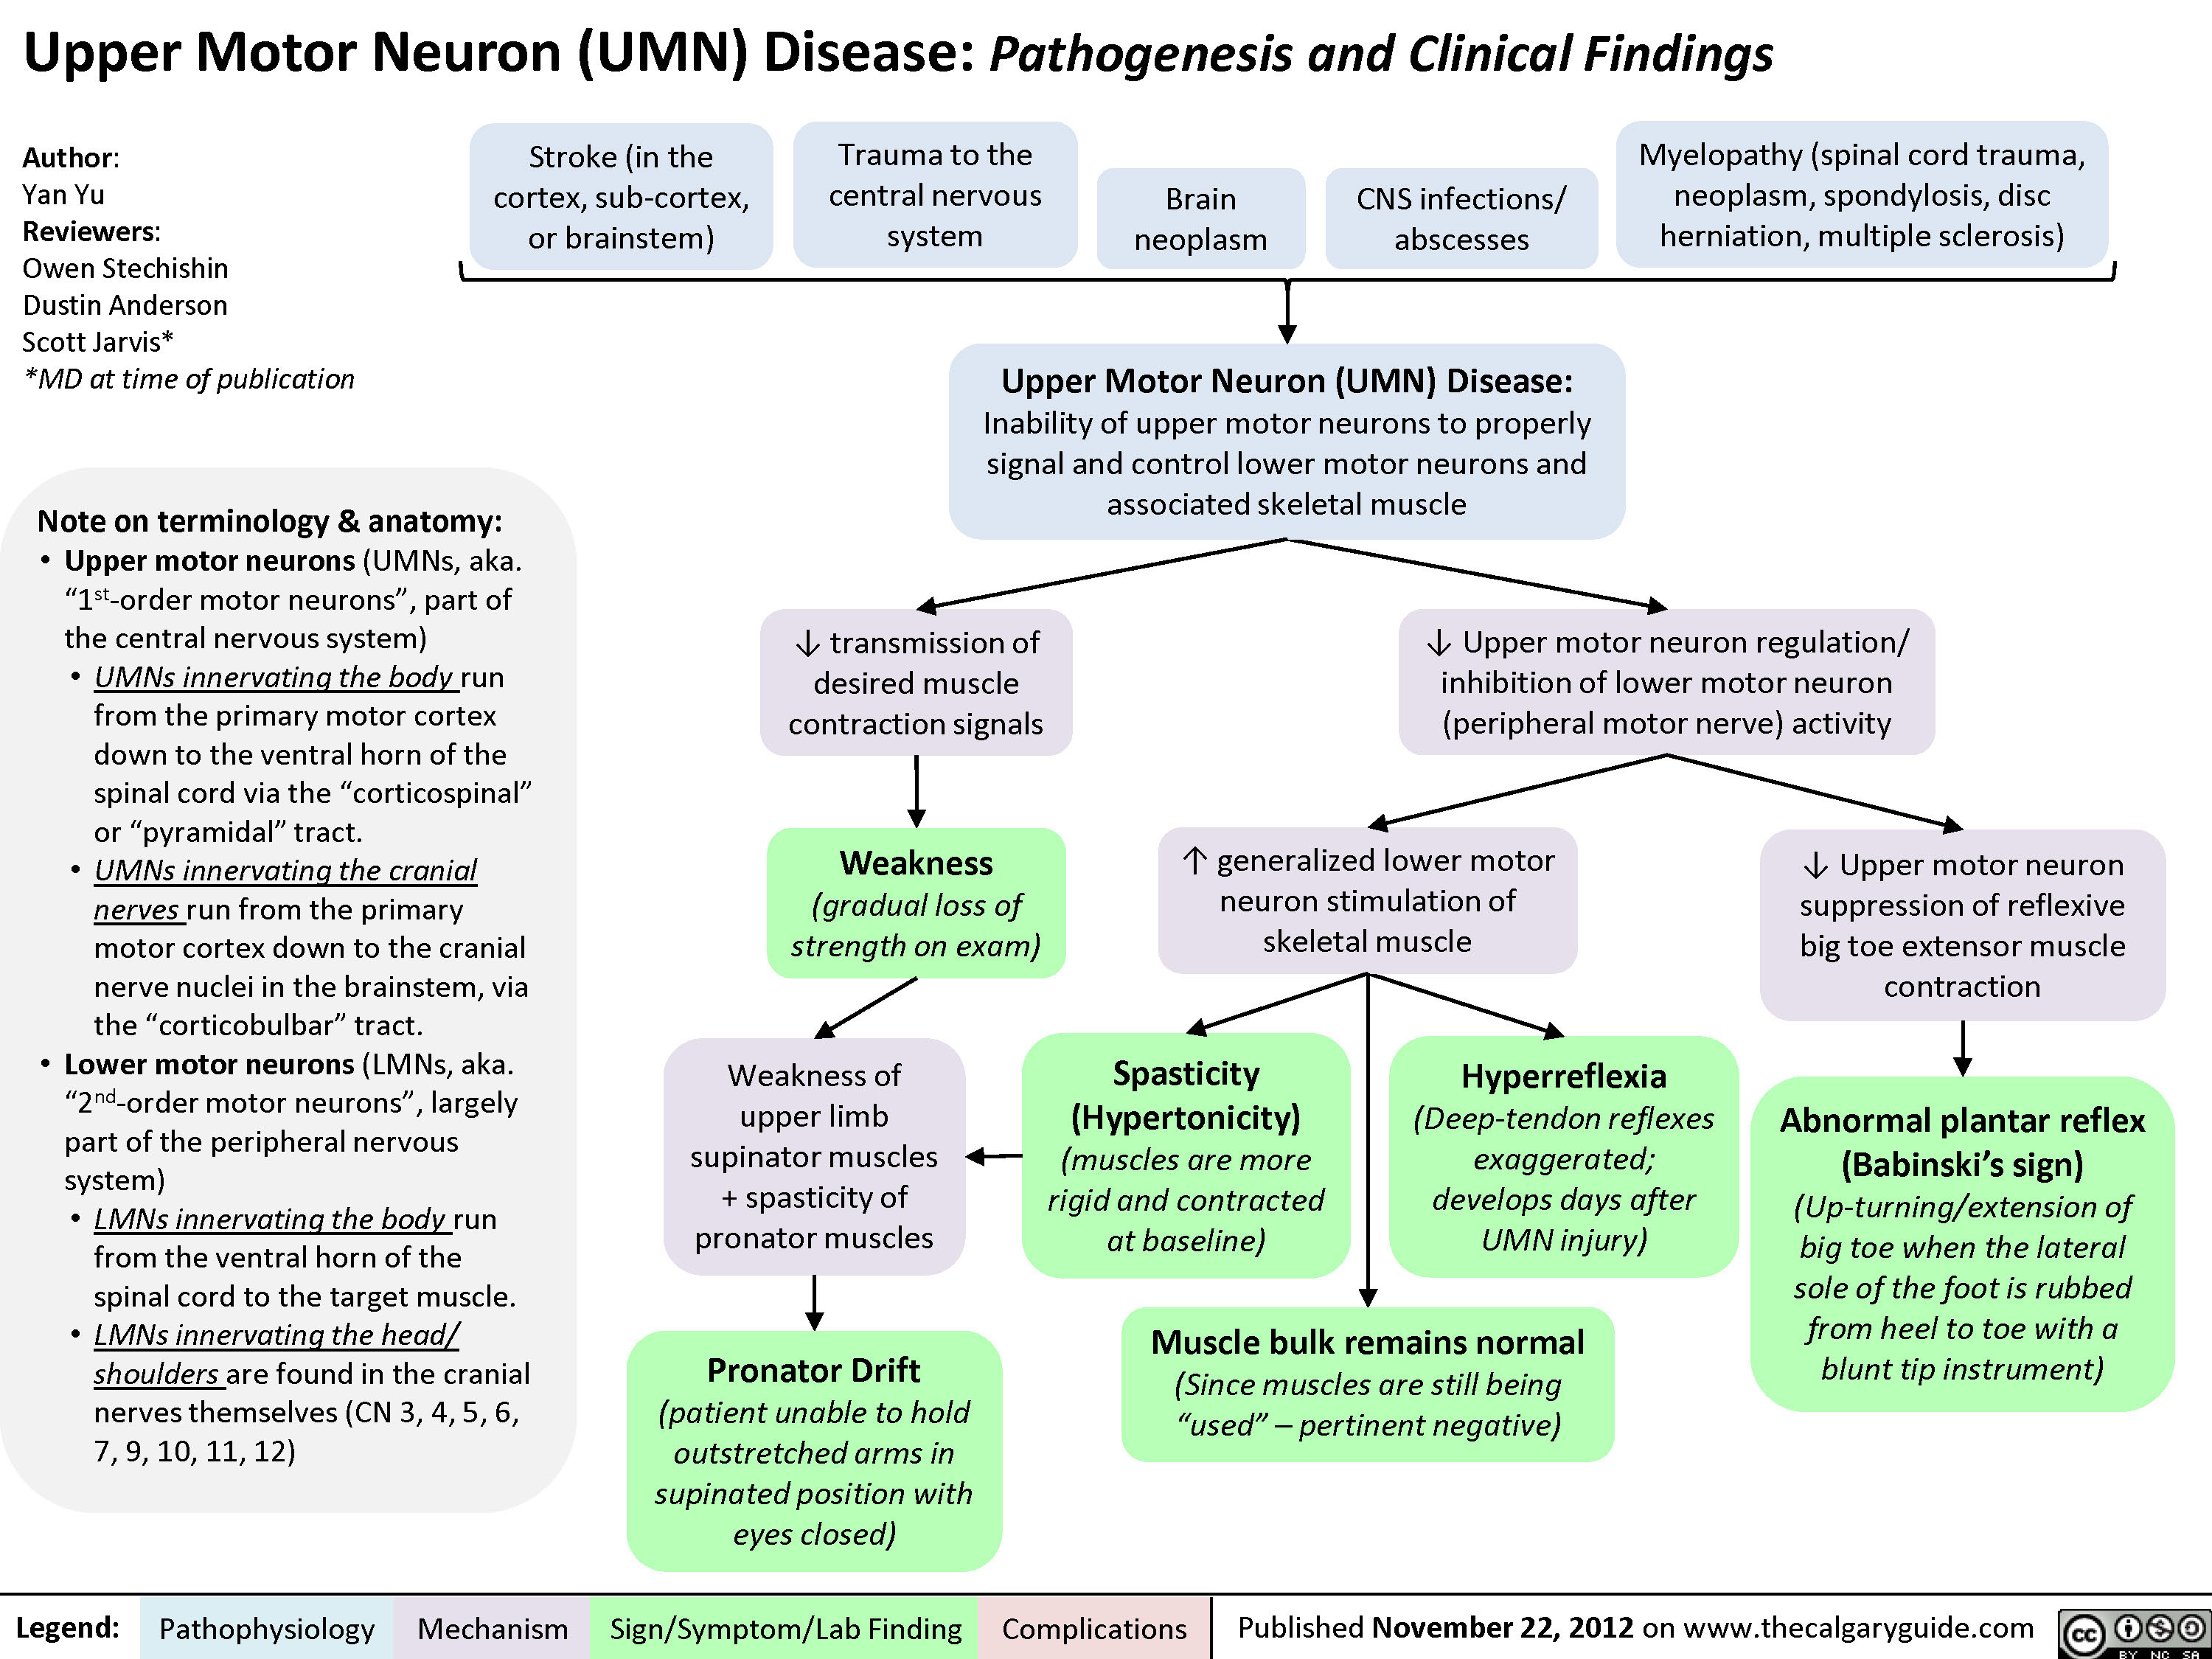 Upper Motor Neuron (UMN) Disease